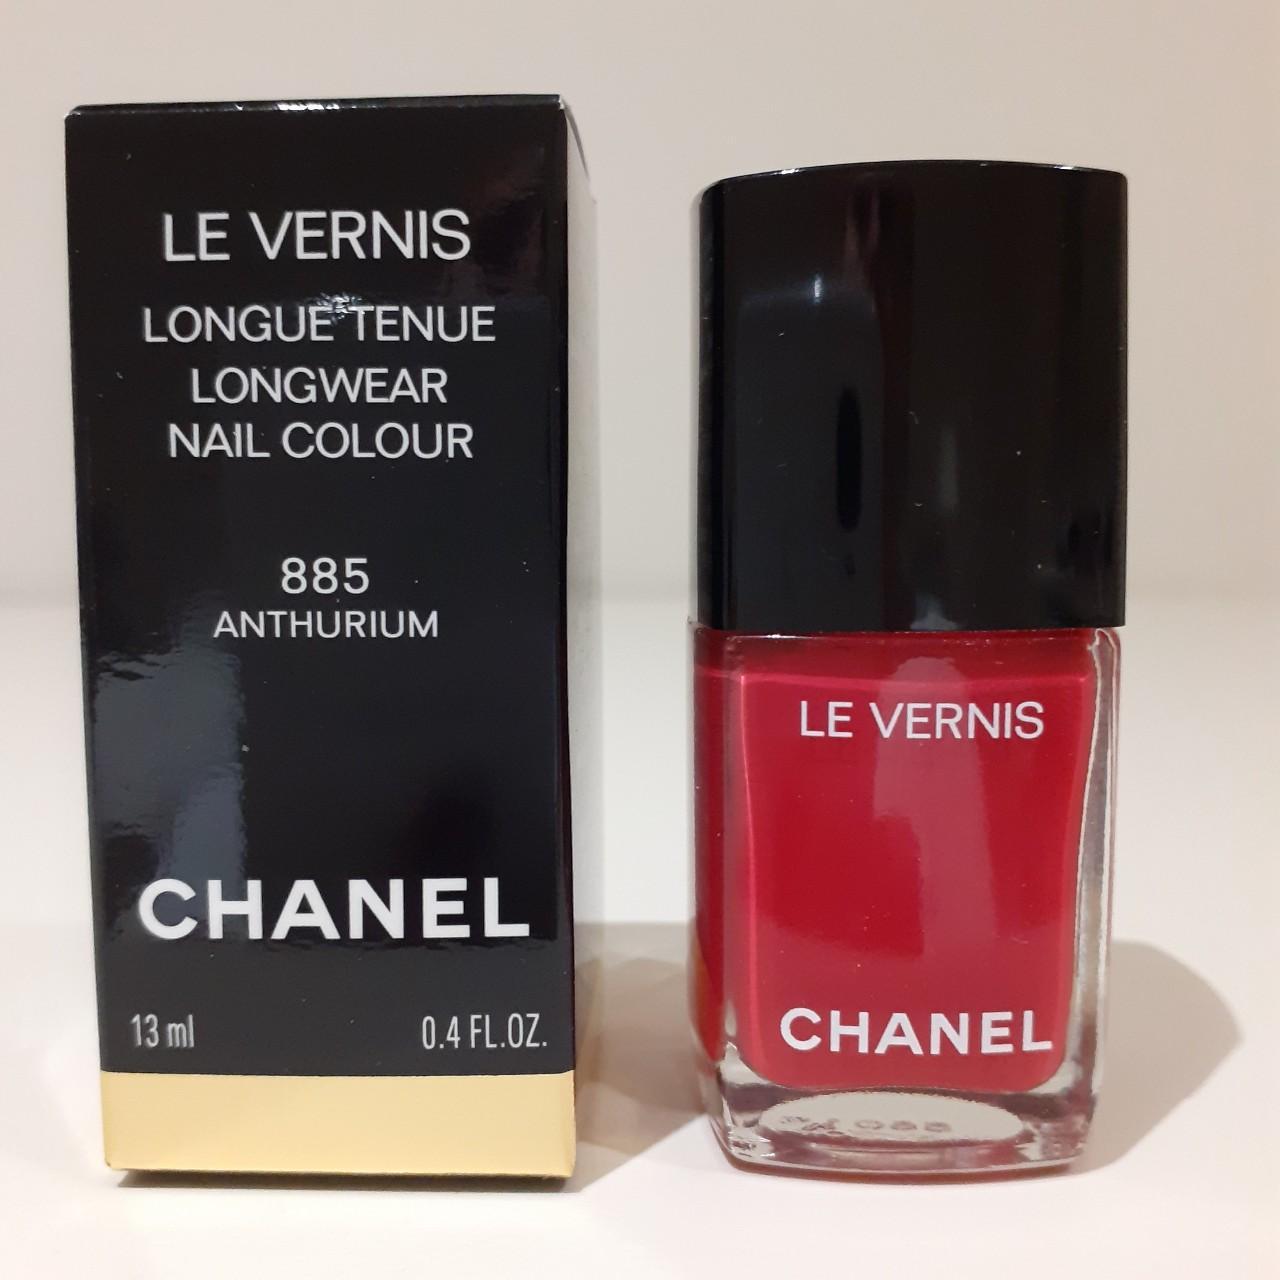 Chanel Le Vernis nail colour 155 Rouge Noir Brand... - Depop